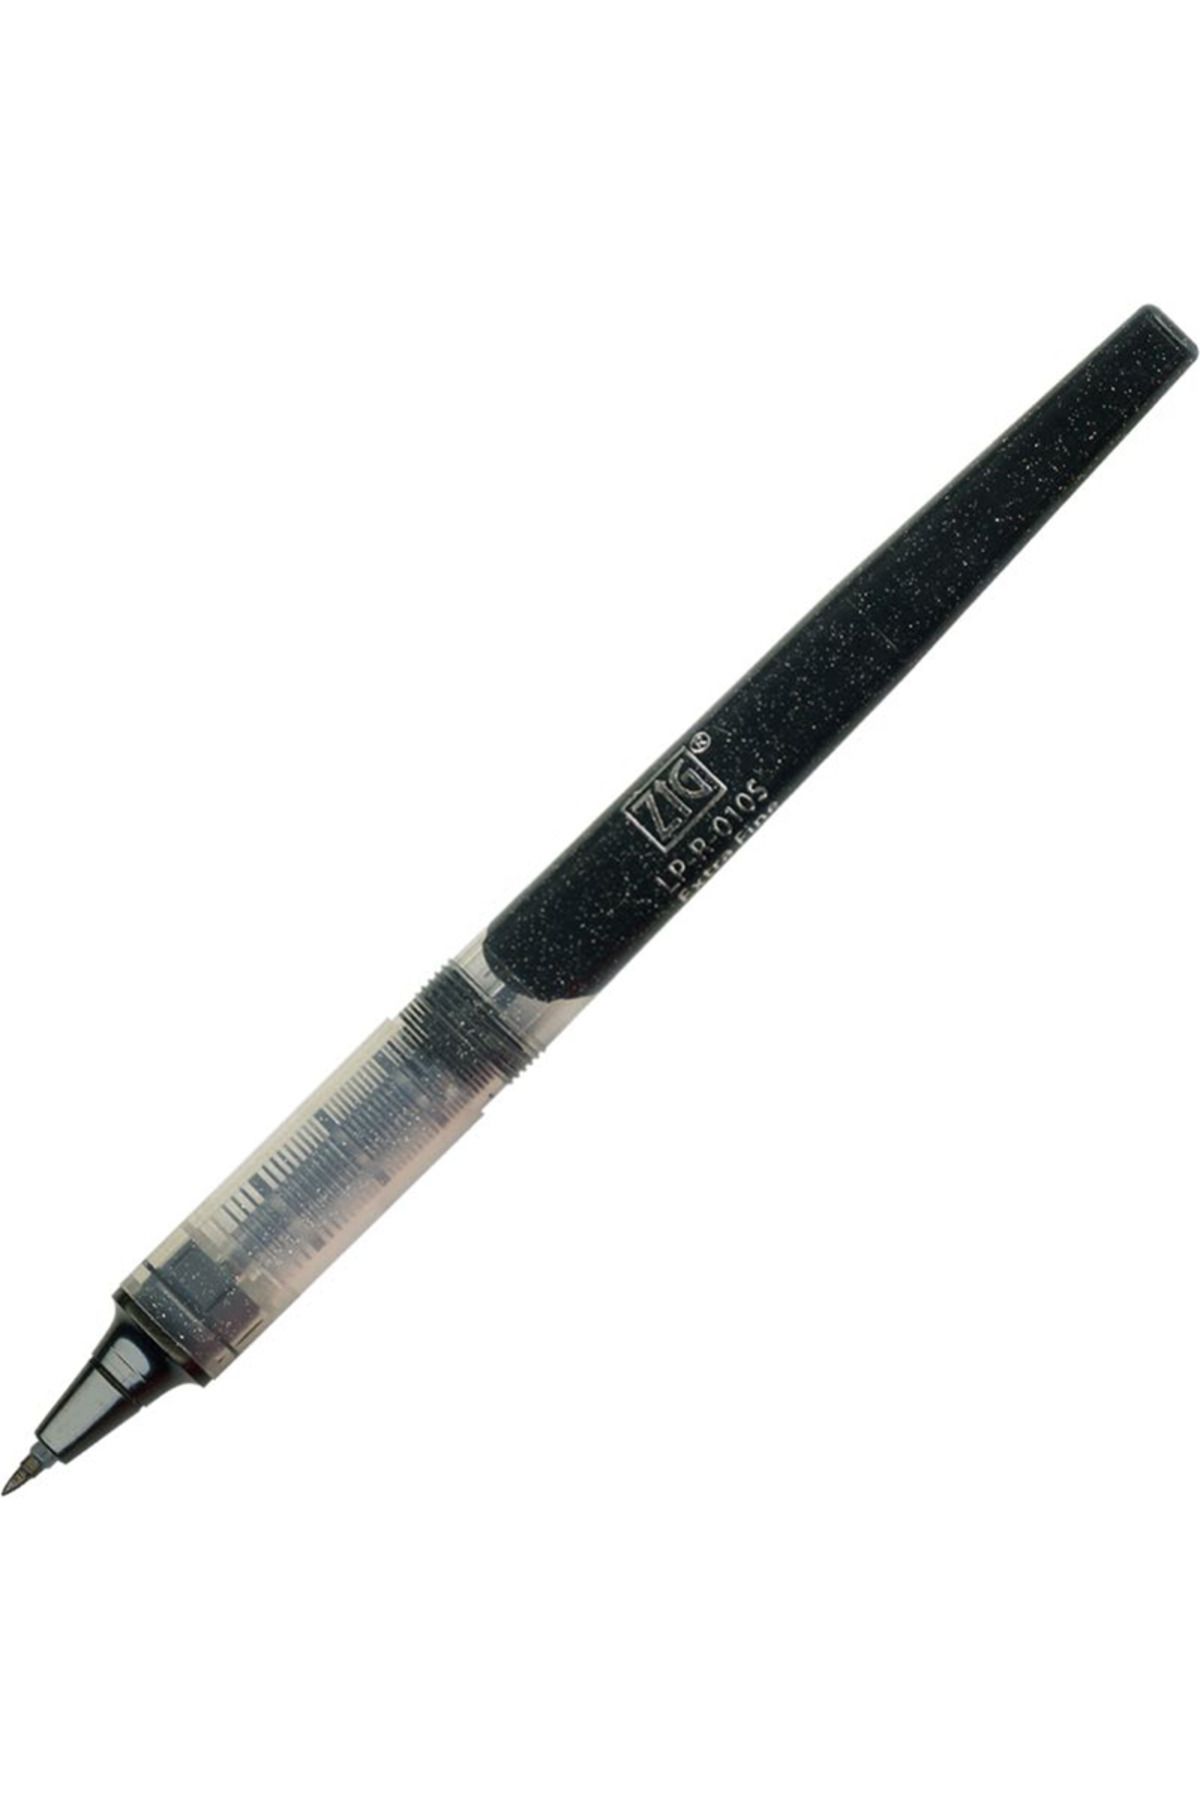 Zig Letter Pen Cocoıro Refıll R-010s Siyah 1 Adet